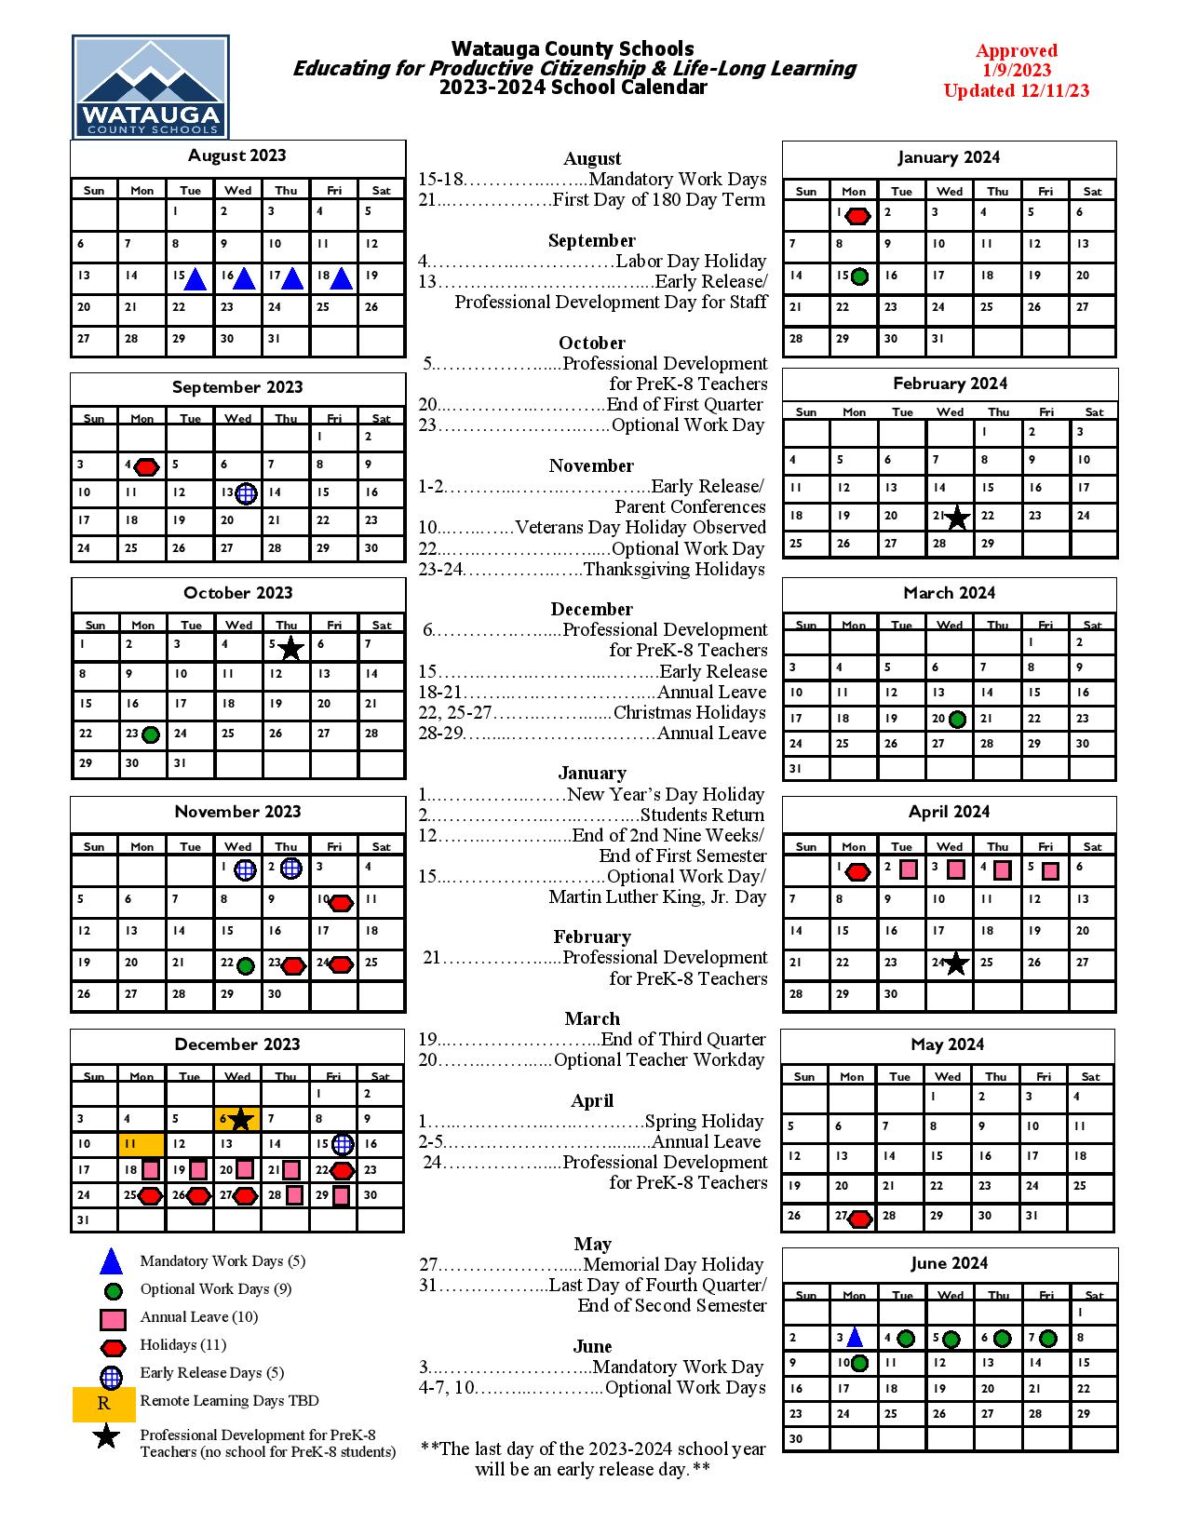 Watauga County Schools Calendar 1187x1536 